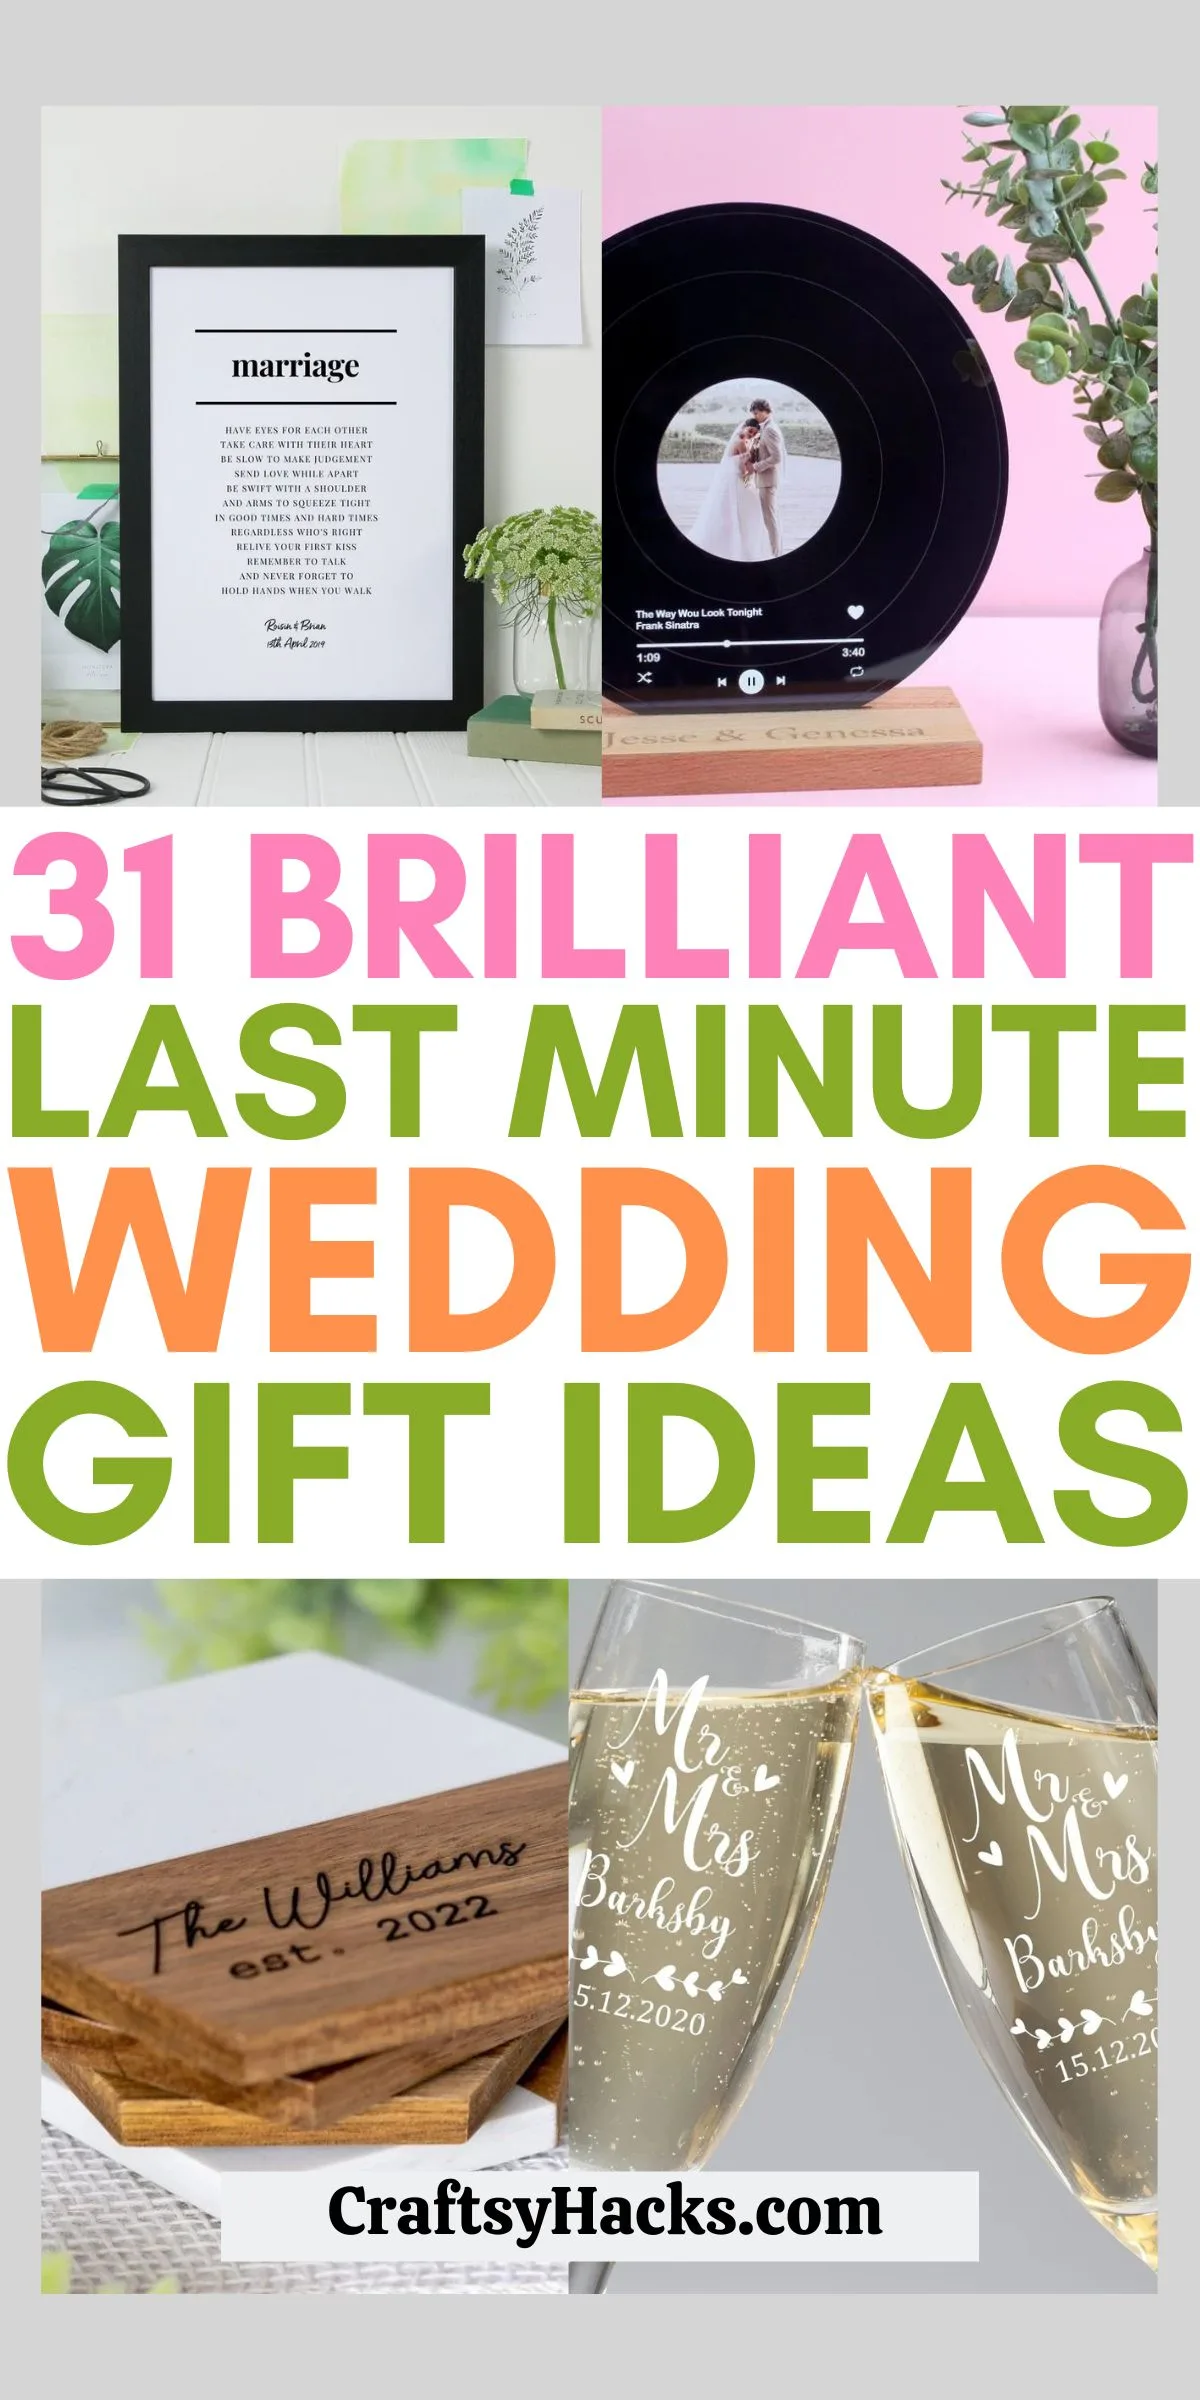 Last minute wedding gift ideas